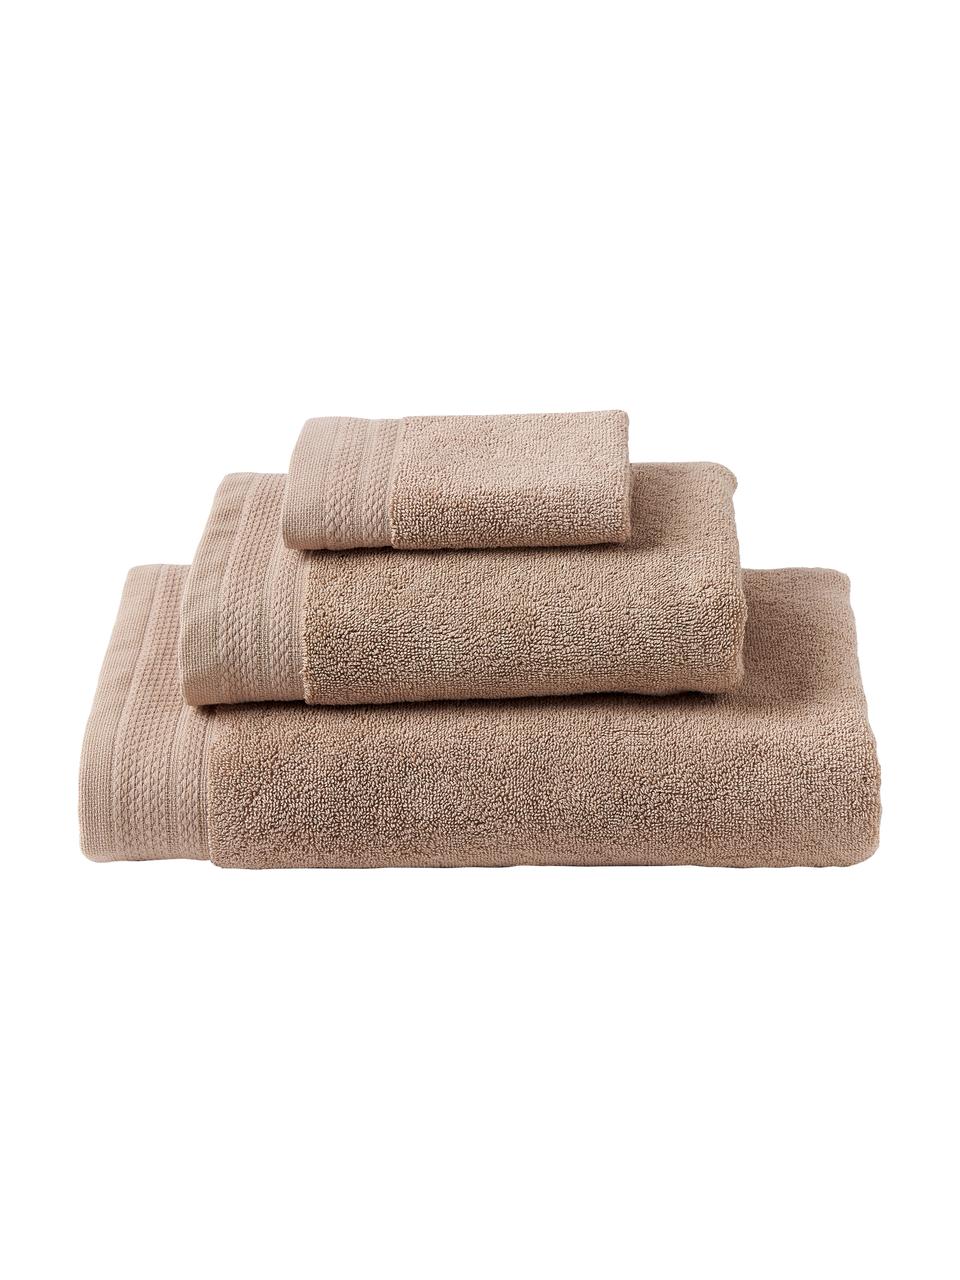 Handtuch-Set Premium aus Bio-Baumwolle, 3-tlg., 100 % Bio-Baumwolle, GOTS-zertifiziert (von GCL International, GCL-300517)
 Schwere Qualität, 600 g/m², Beige, Set mit verschiedenen Größen